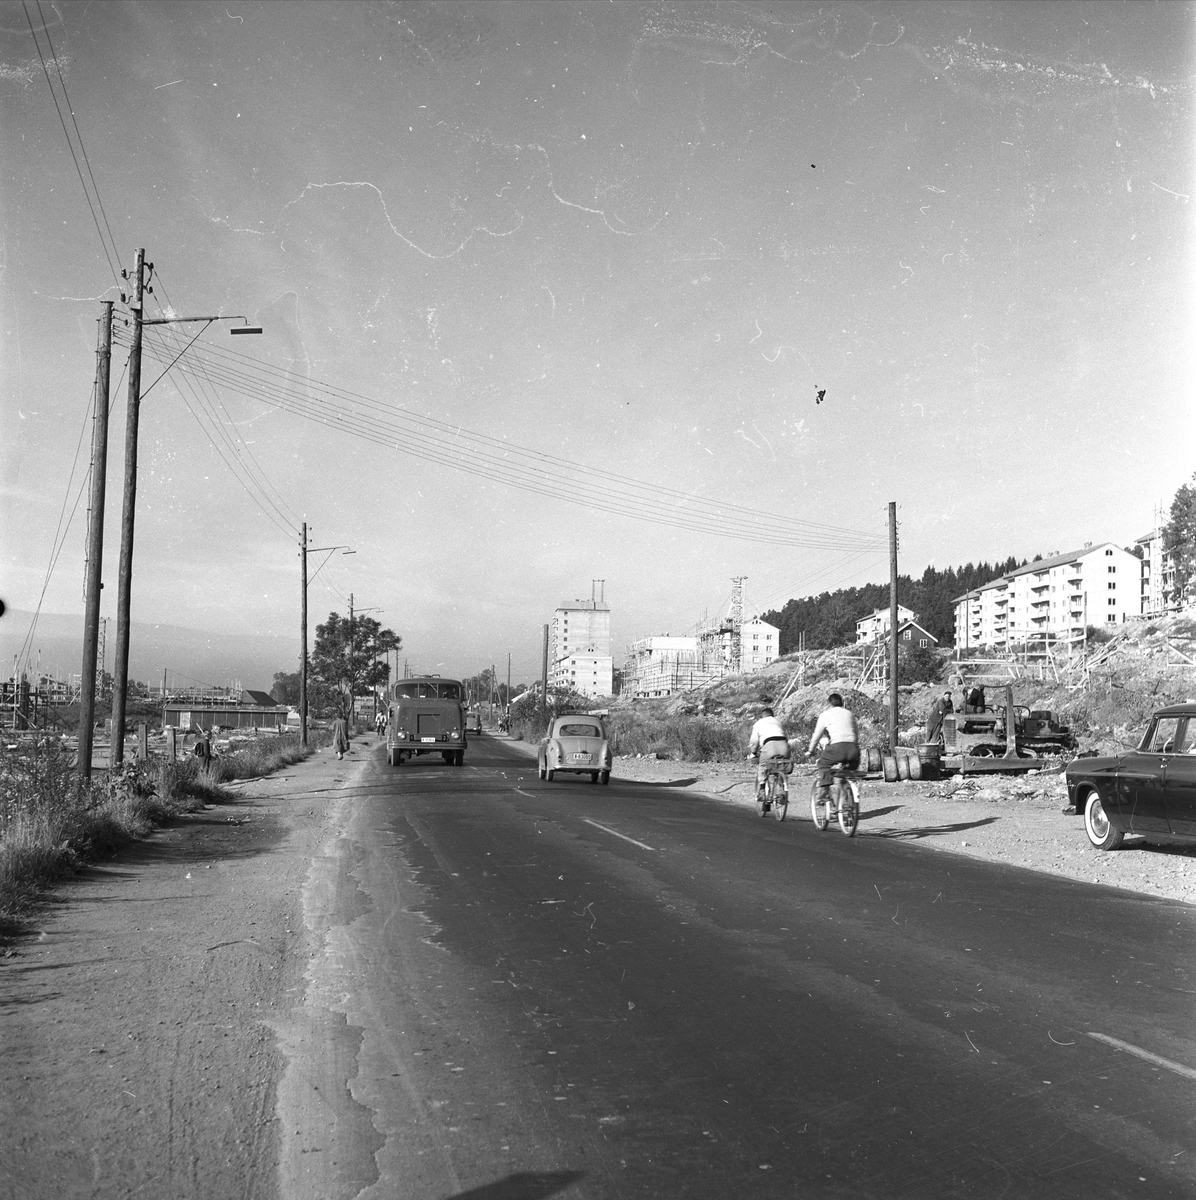 Trondheimsveien, Oslo, Veitvedt, 18.08.1954. Trafikkbilde, blokker i bakgrunnen.